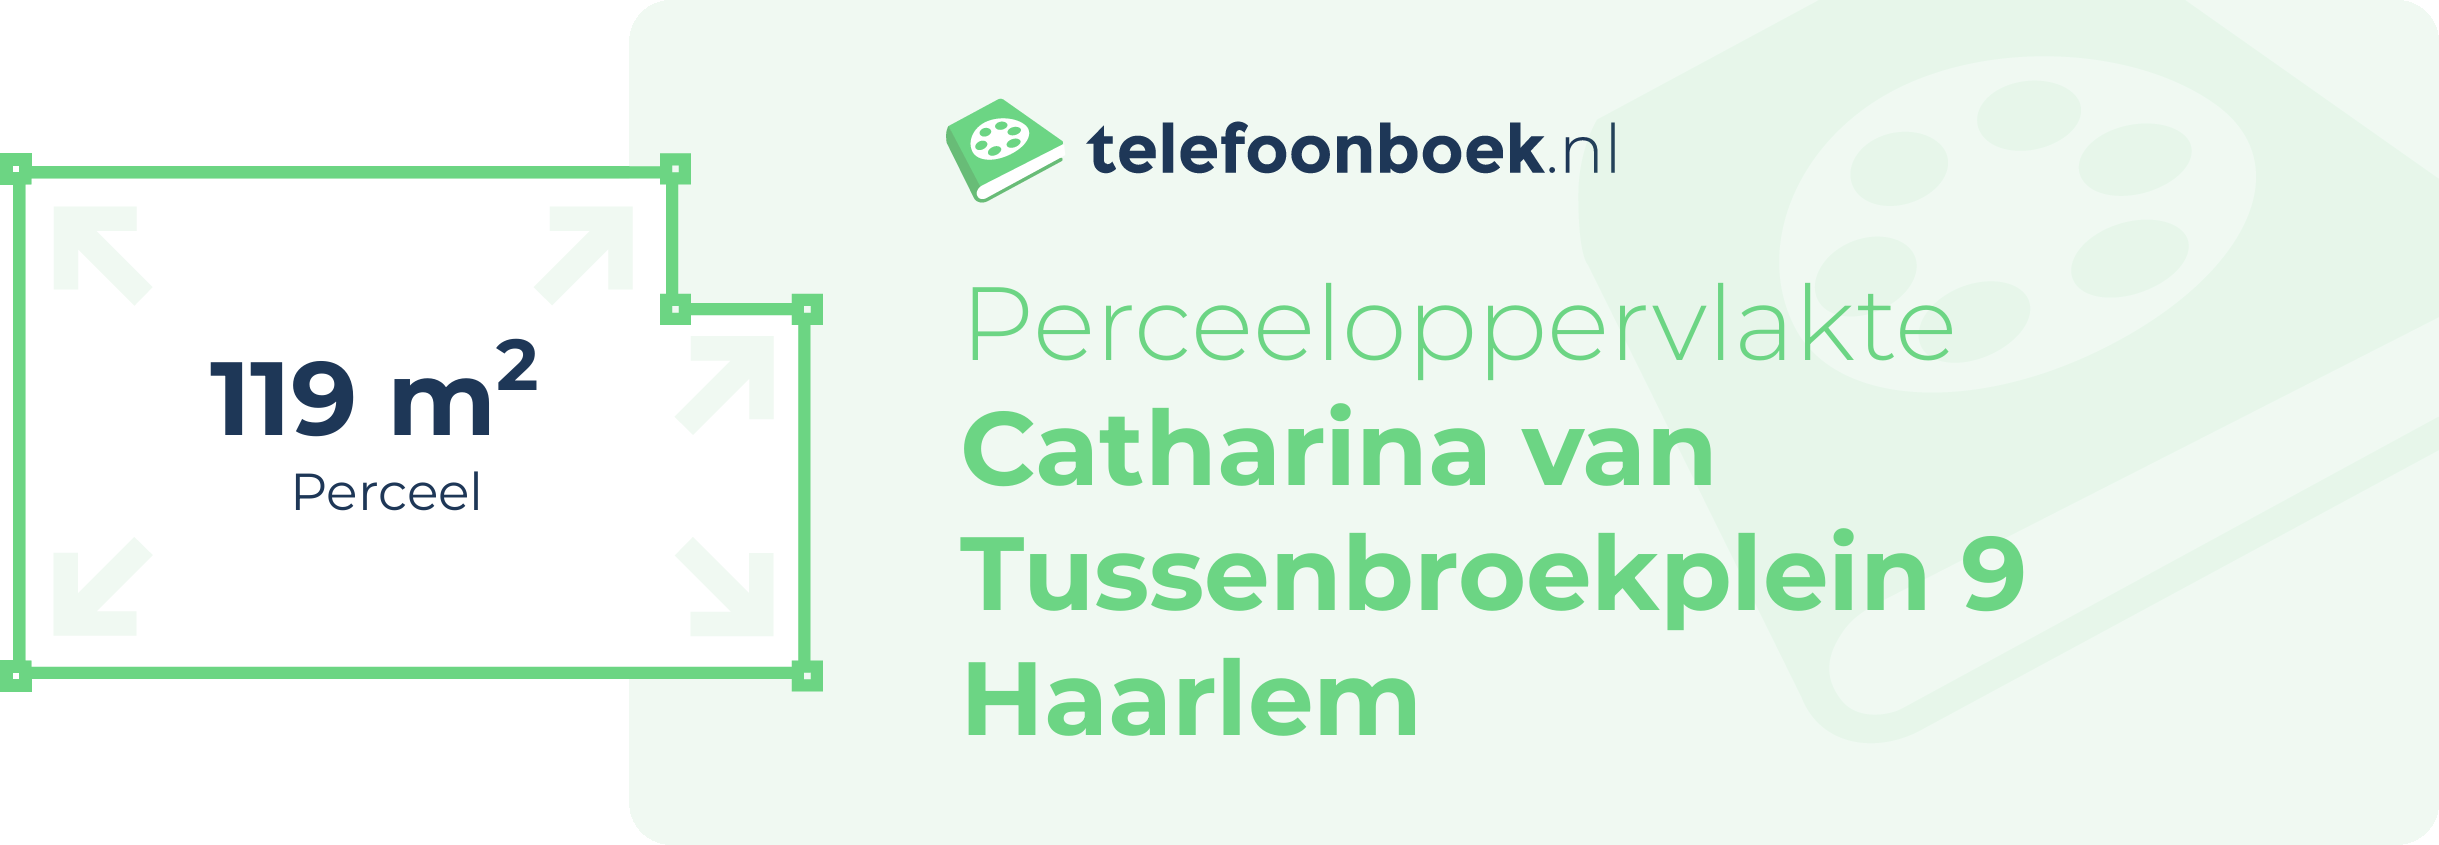 Perceeloppervlakte Catharina Van Tussenbroekplein 9 Haarlem